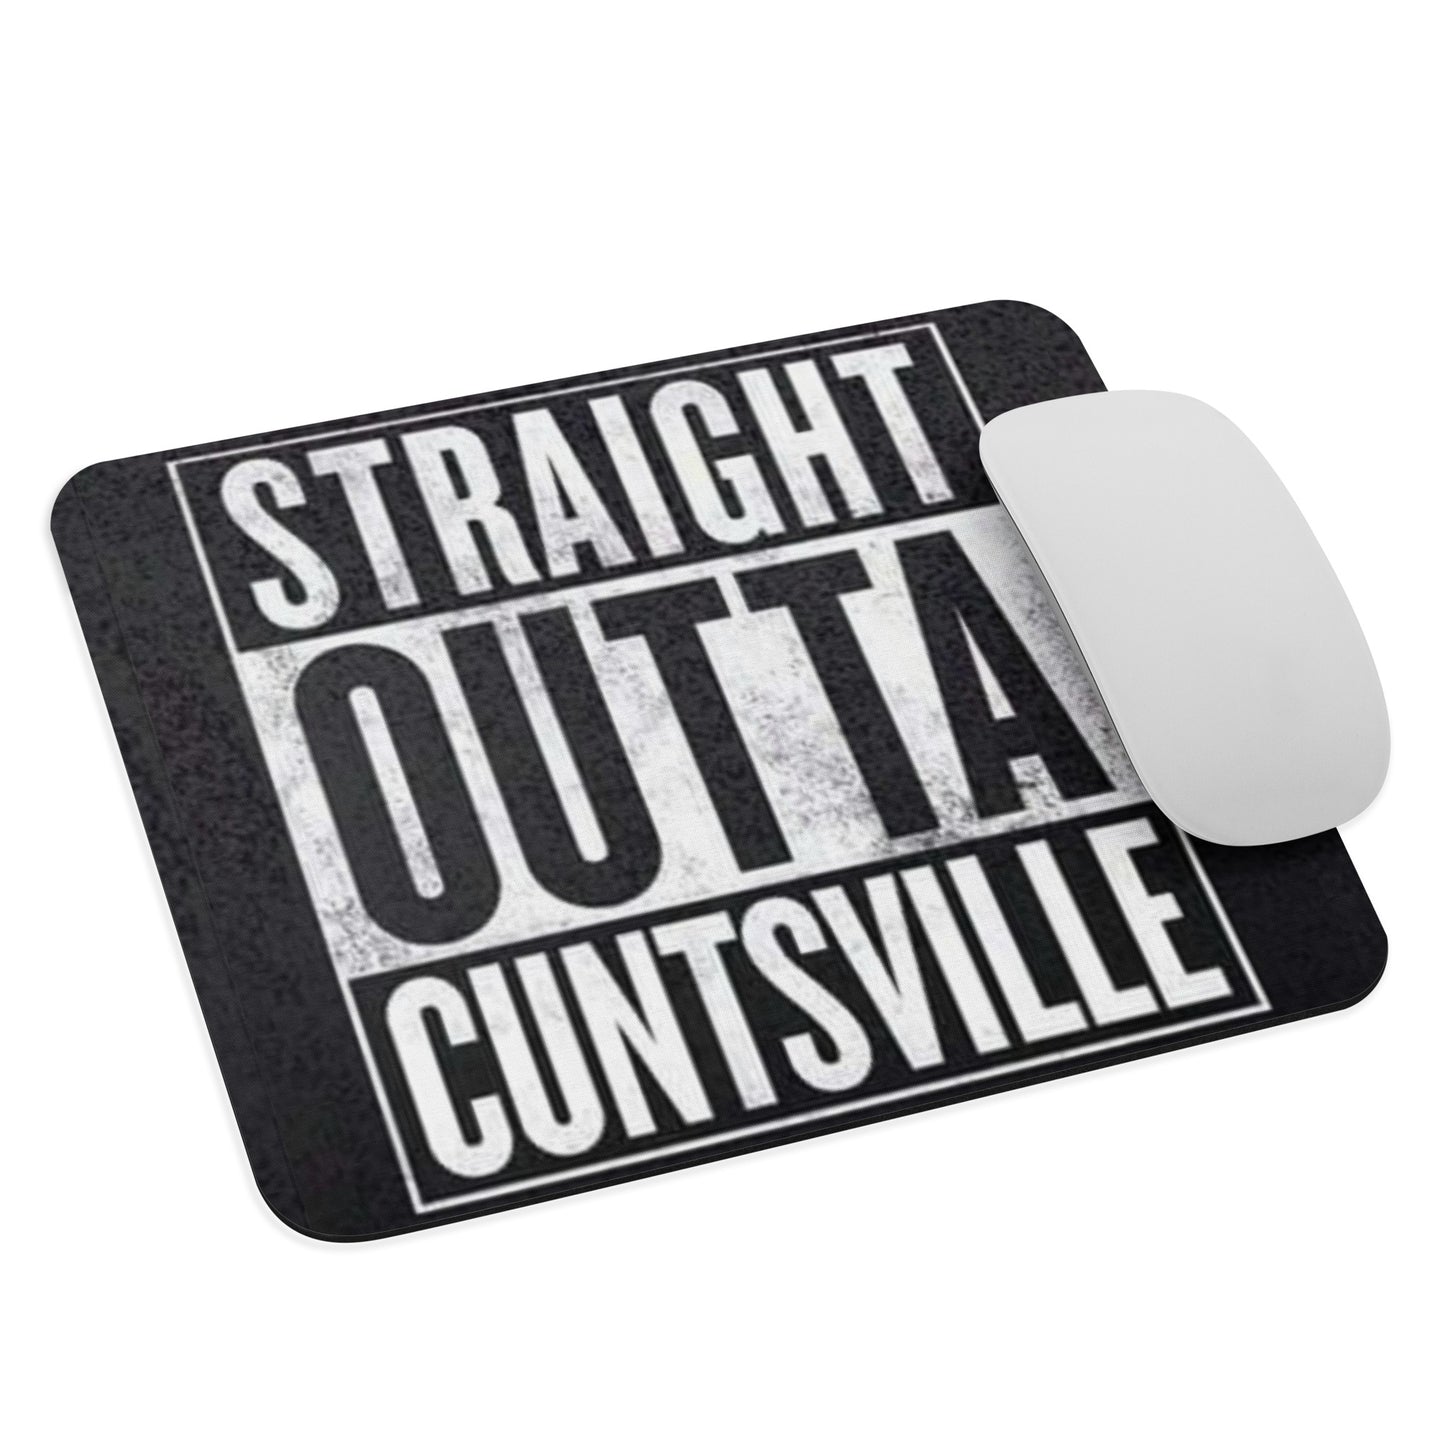 CuntSville Mouse pad